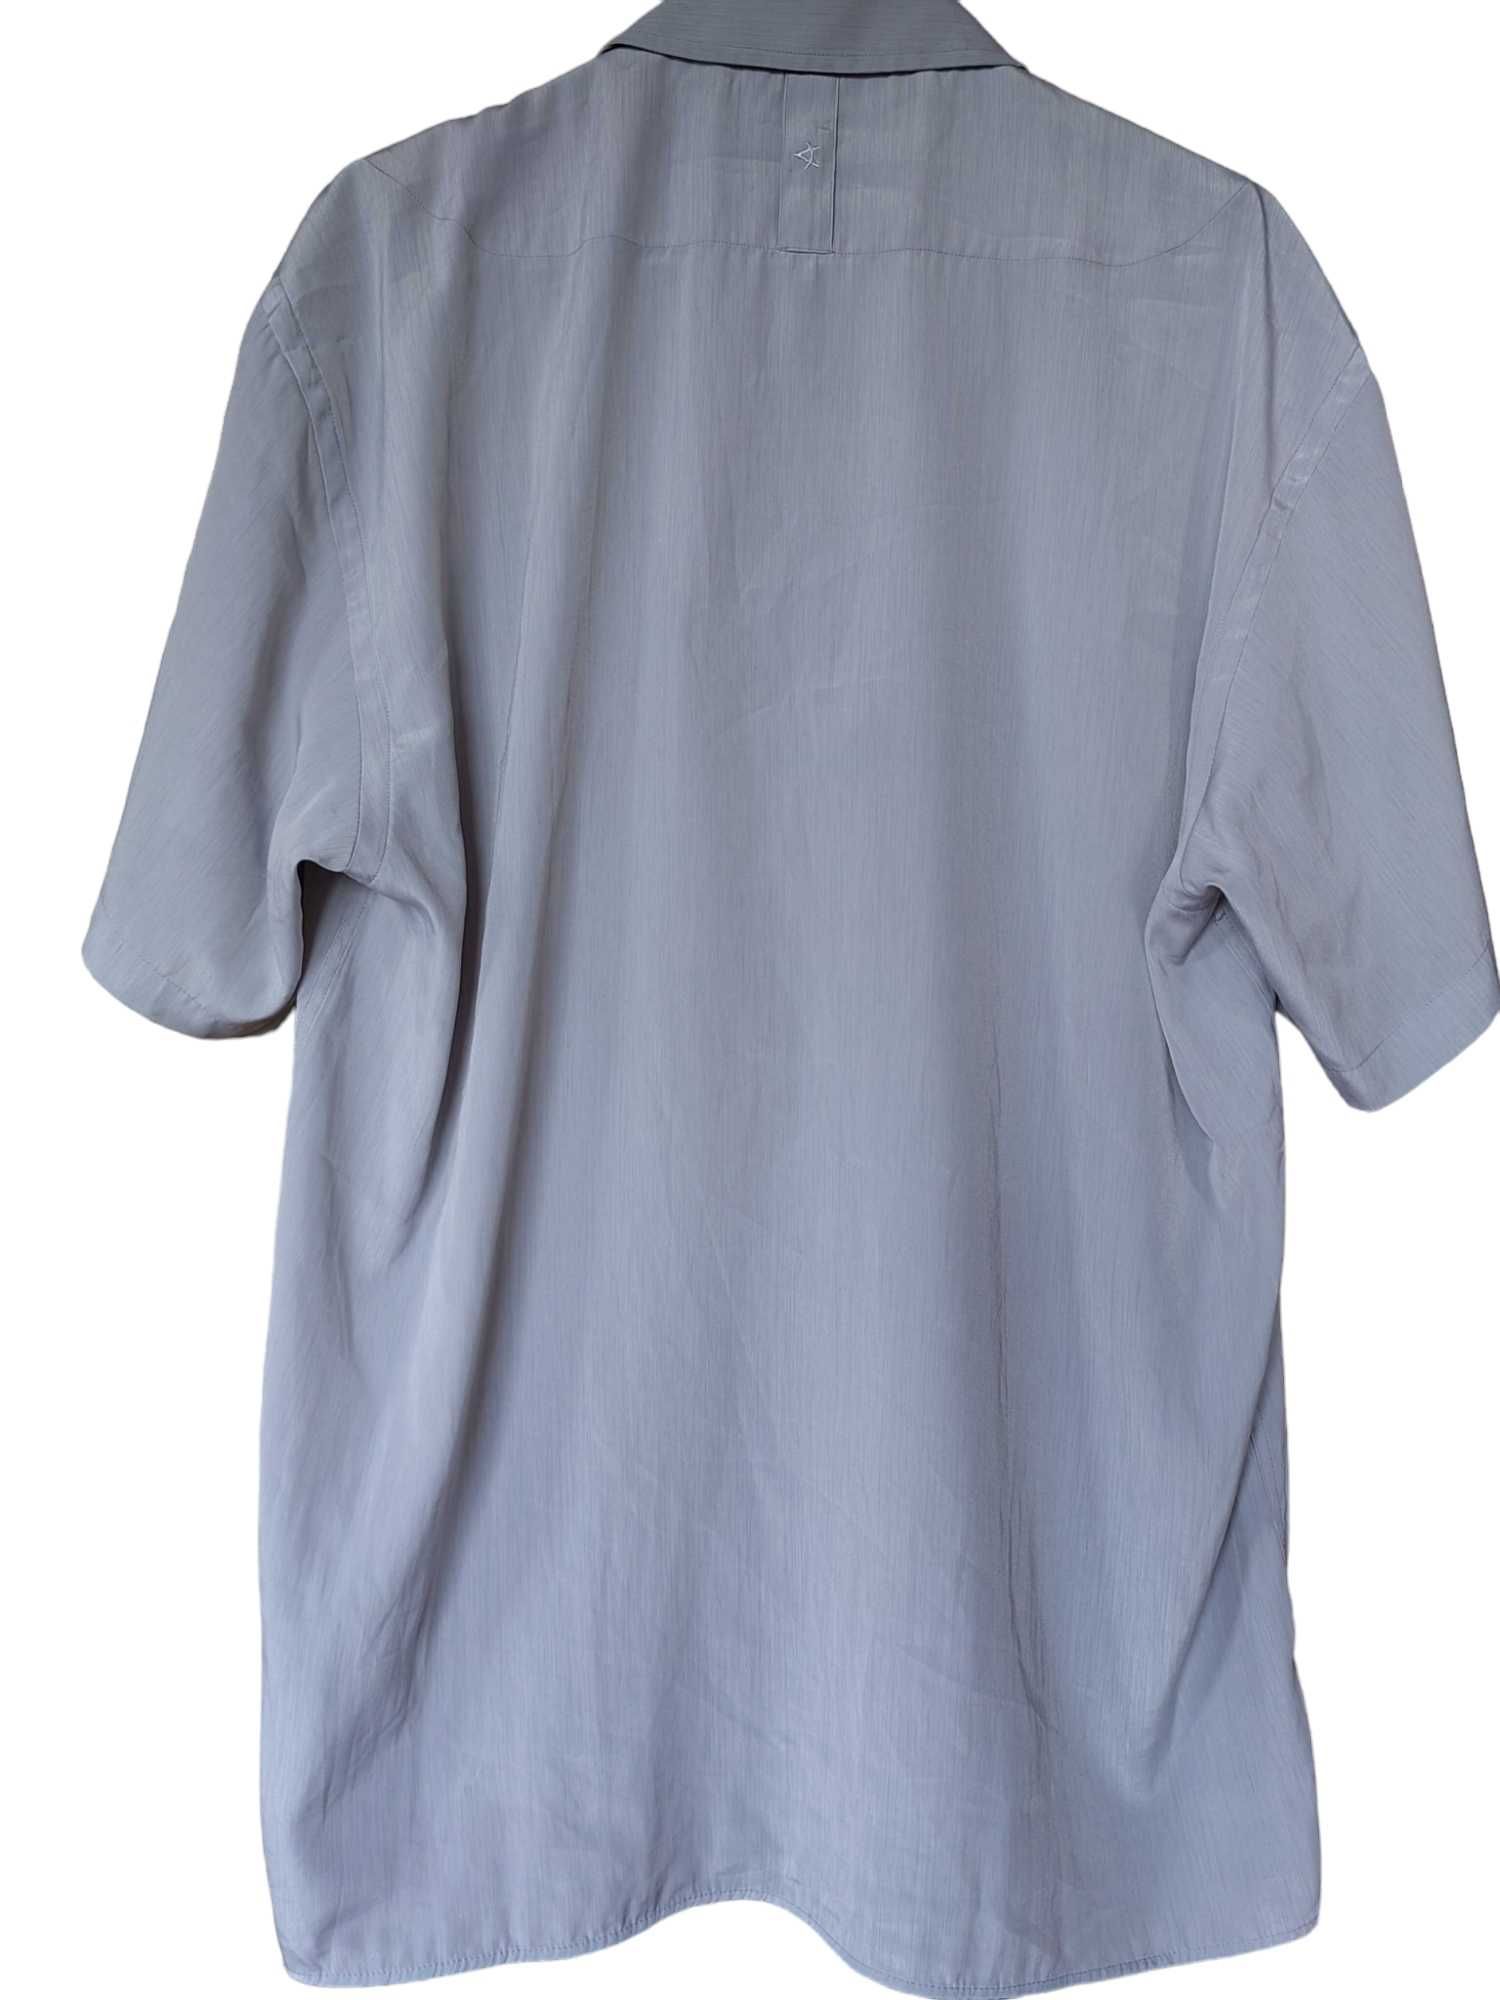 Мъжка спортна риза Chris K., 100% полиамид, Сива, 72х62 см, M